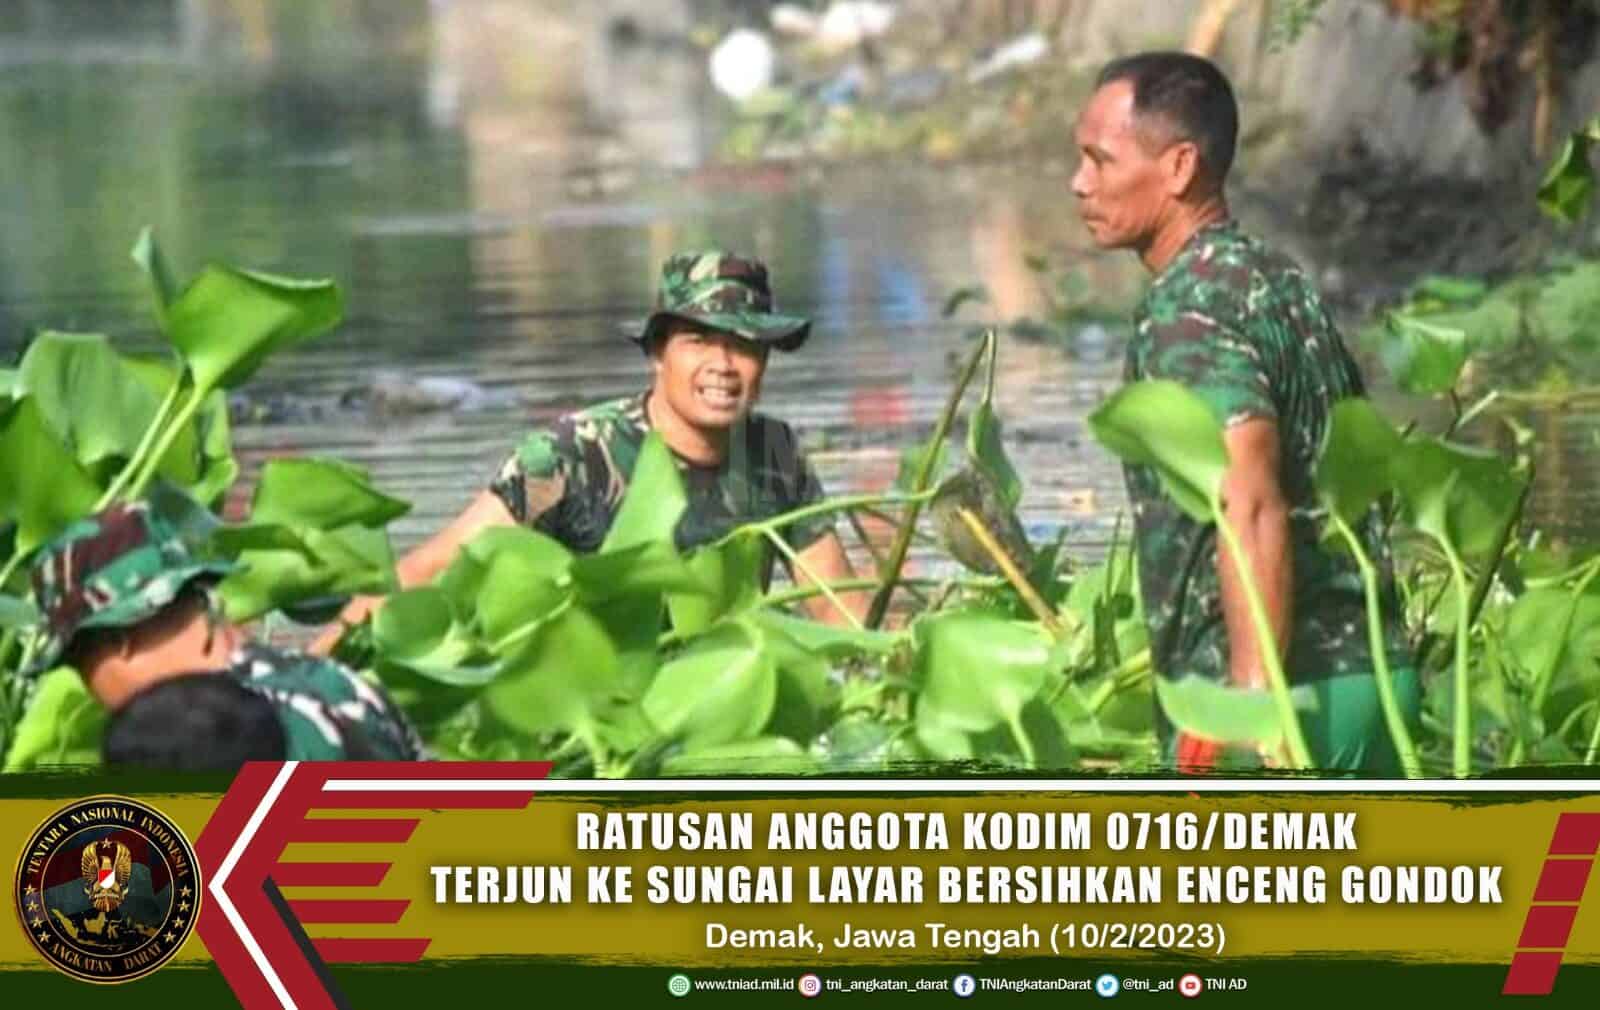 Ratusan Anggota Kodim 0716/Demak Terjun ke Sungai Layar Bersihkan Eceng Gondok